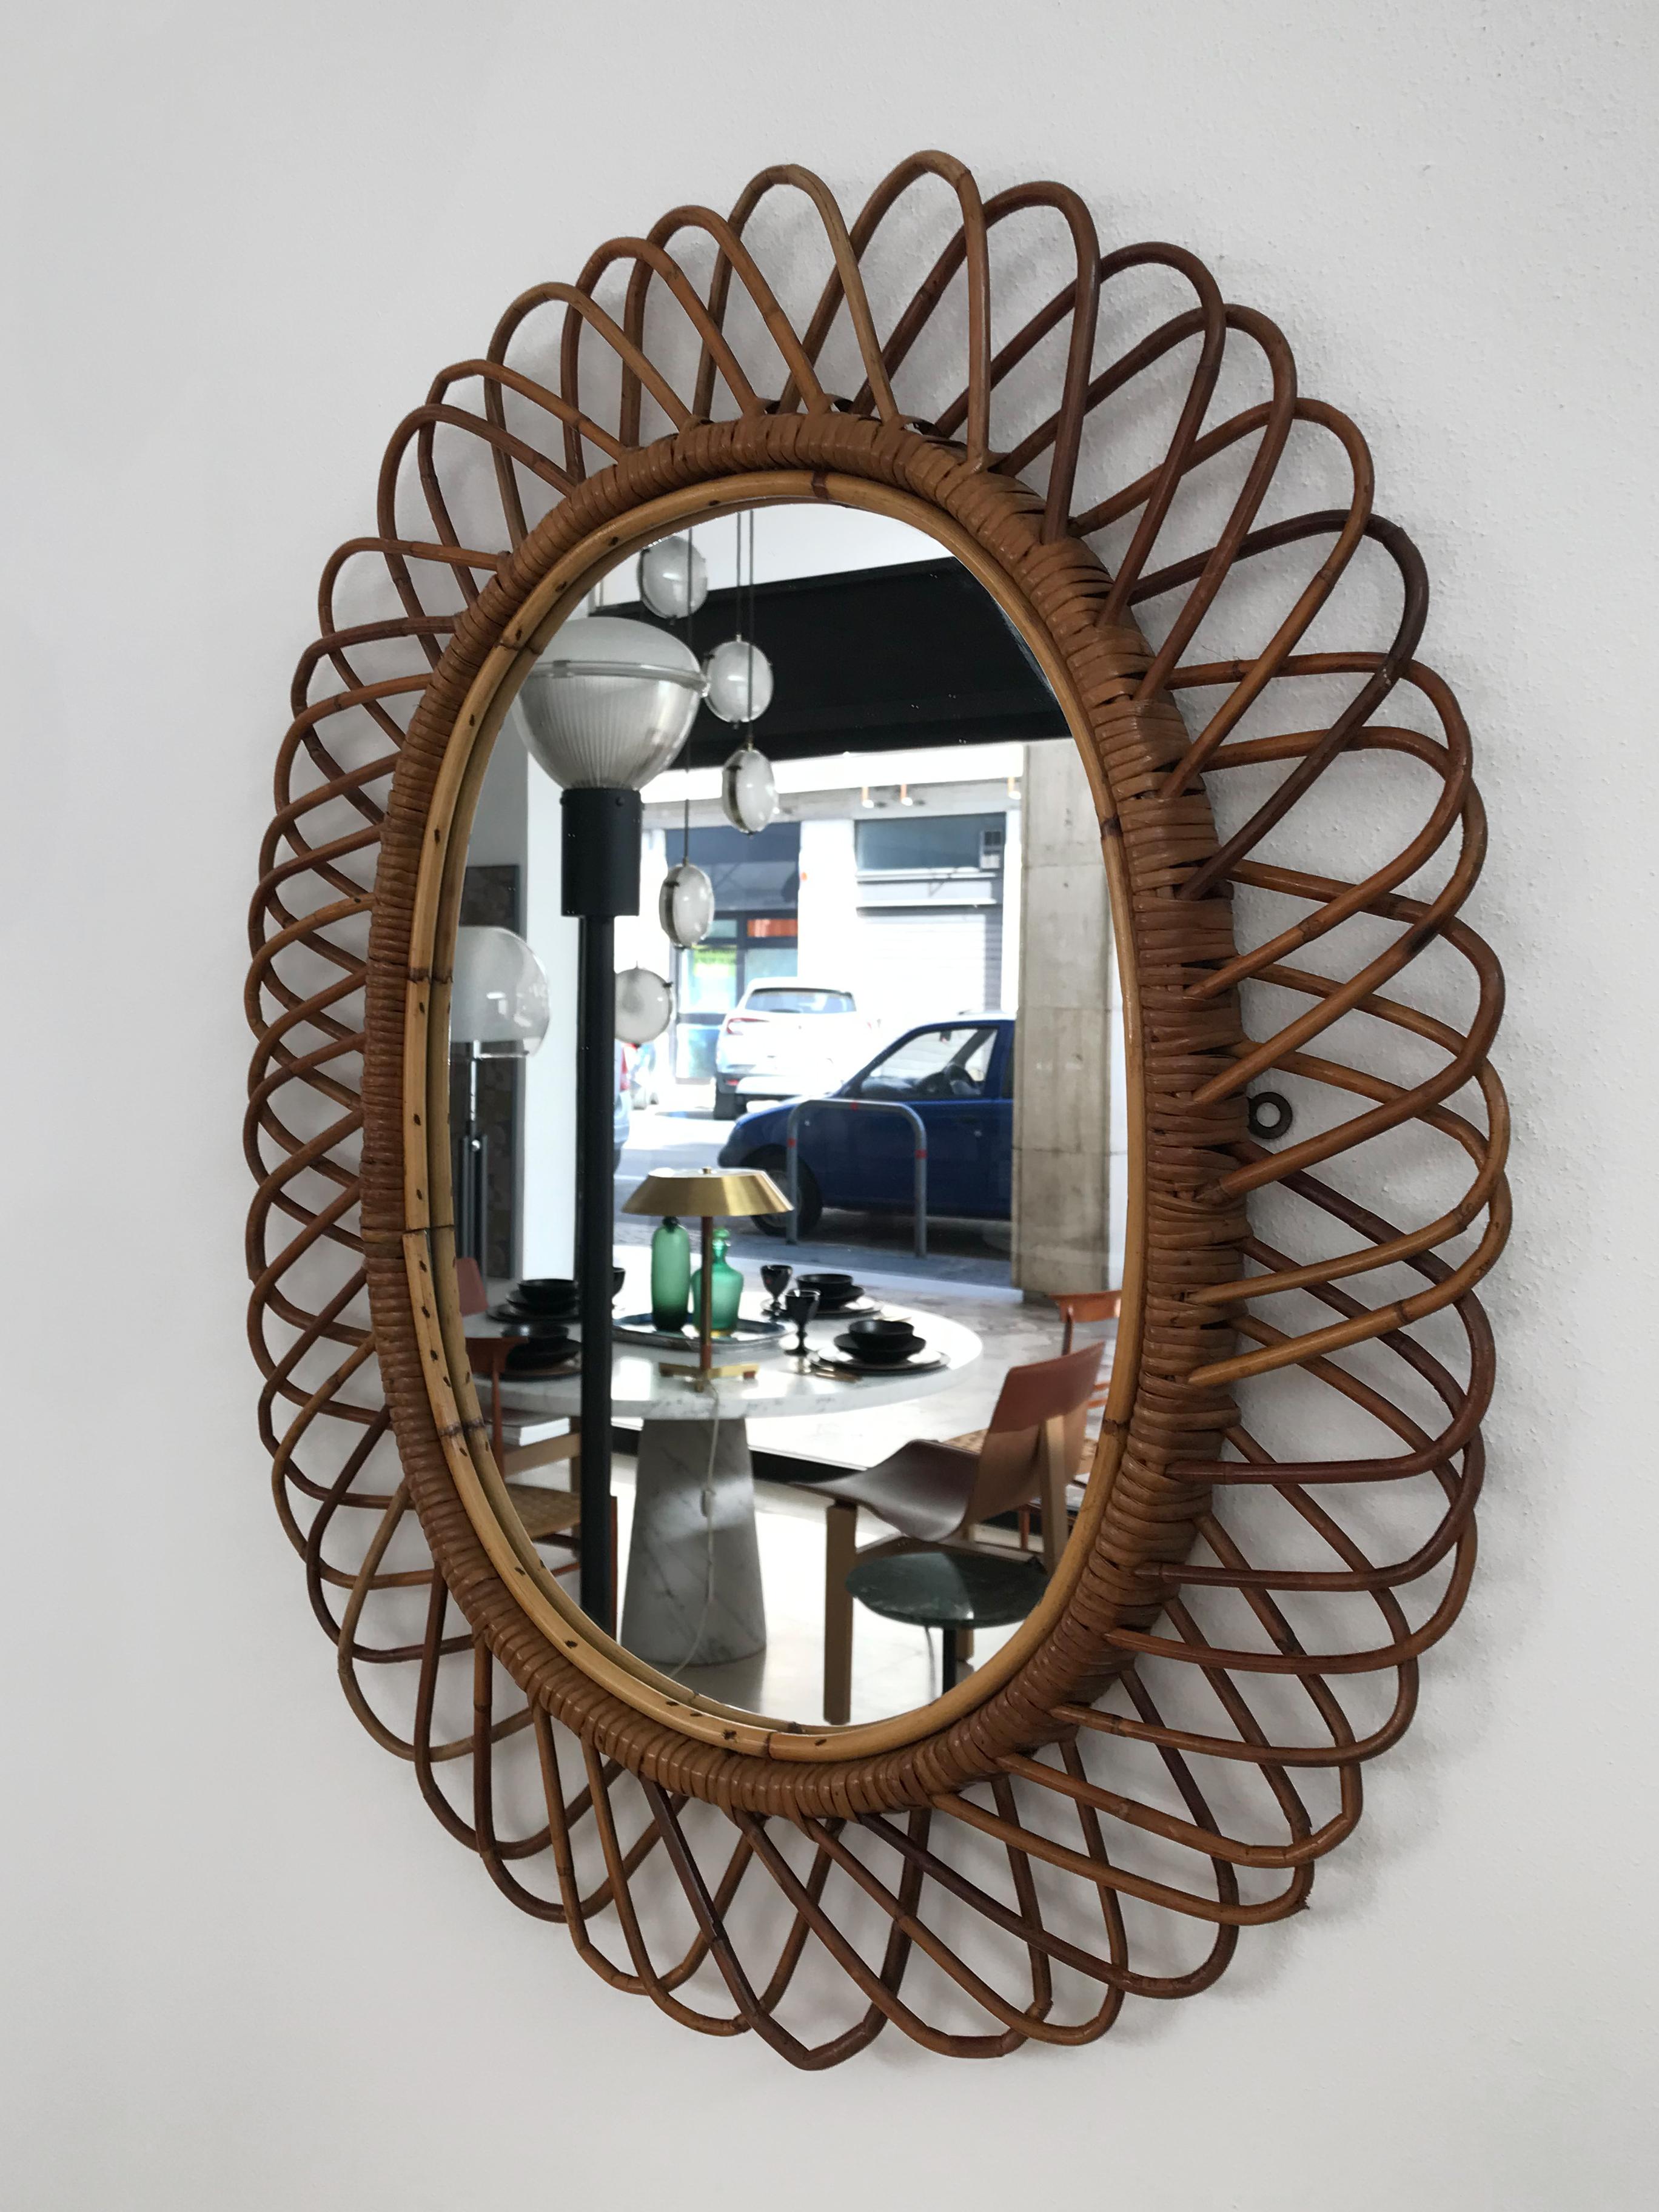 Miroir mural ovale en rotin de bambou, design italien du milieu du siècle dernier, Italie 1950.
Le miroir peut être placé verticalement ou horizontalement.

Veuillez noter que les articles sont d'origine de l'époque et qu'ils présentent des signes